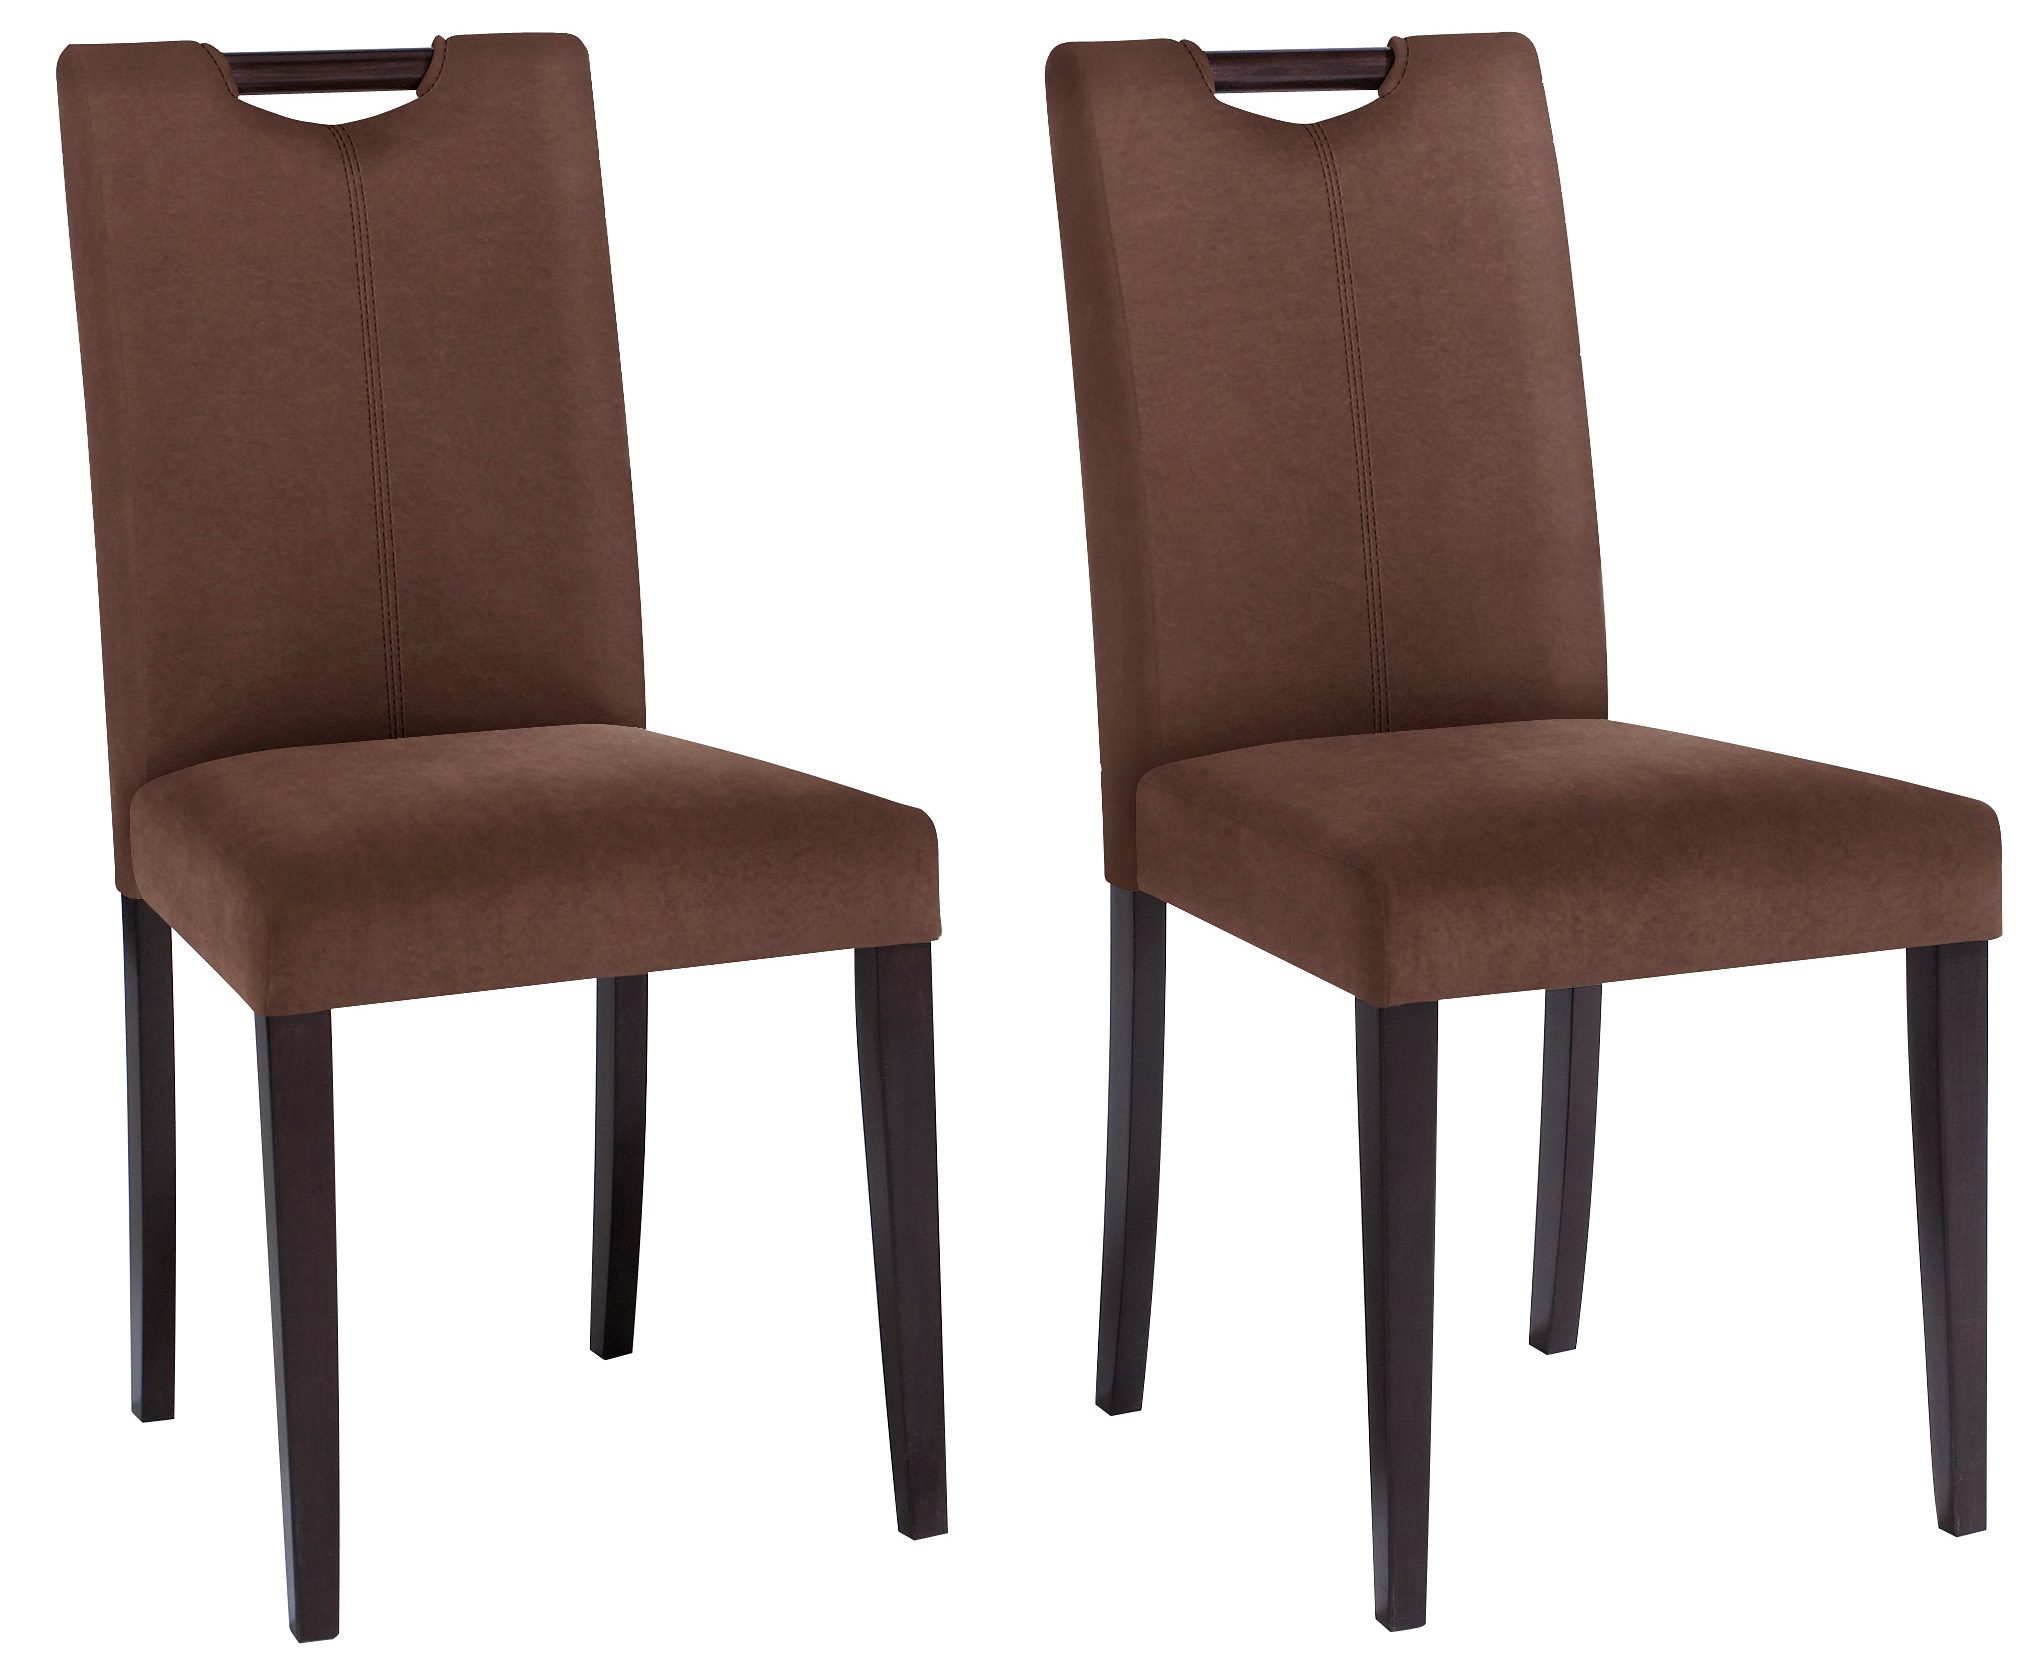 Home affaire Stuhl »Stuhlparade« (Set, 2 Stück), in zwei unterschiedlichen  Bezugsqualitäten, in verschiedenen Farbvarianten, Sitzhöhe 46 cm online  kaufen | OTTO